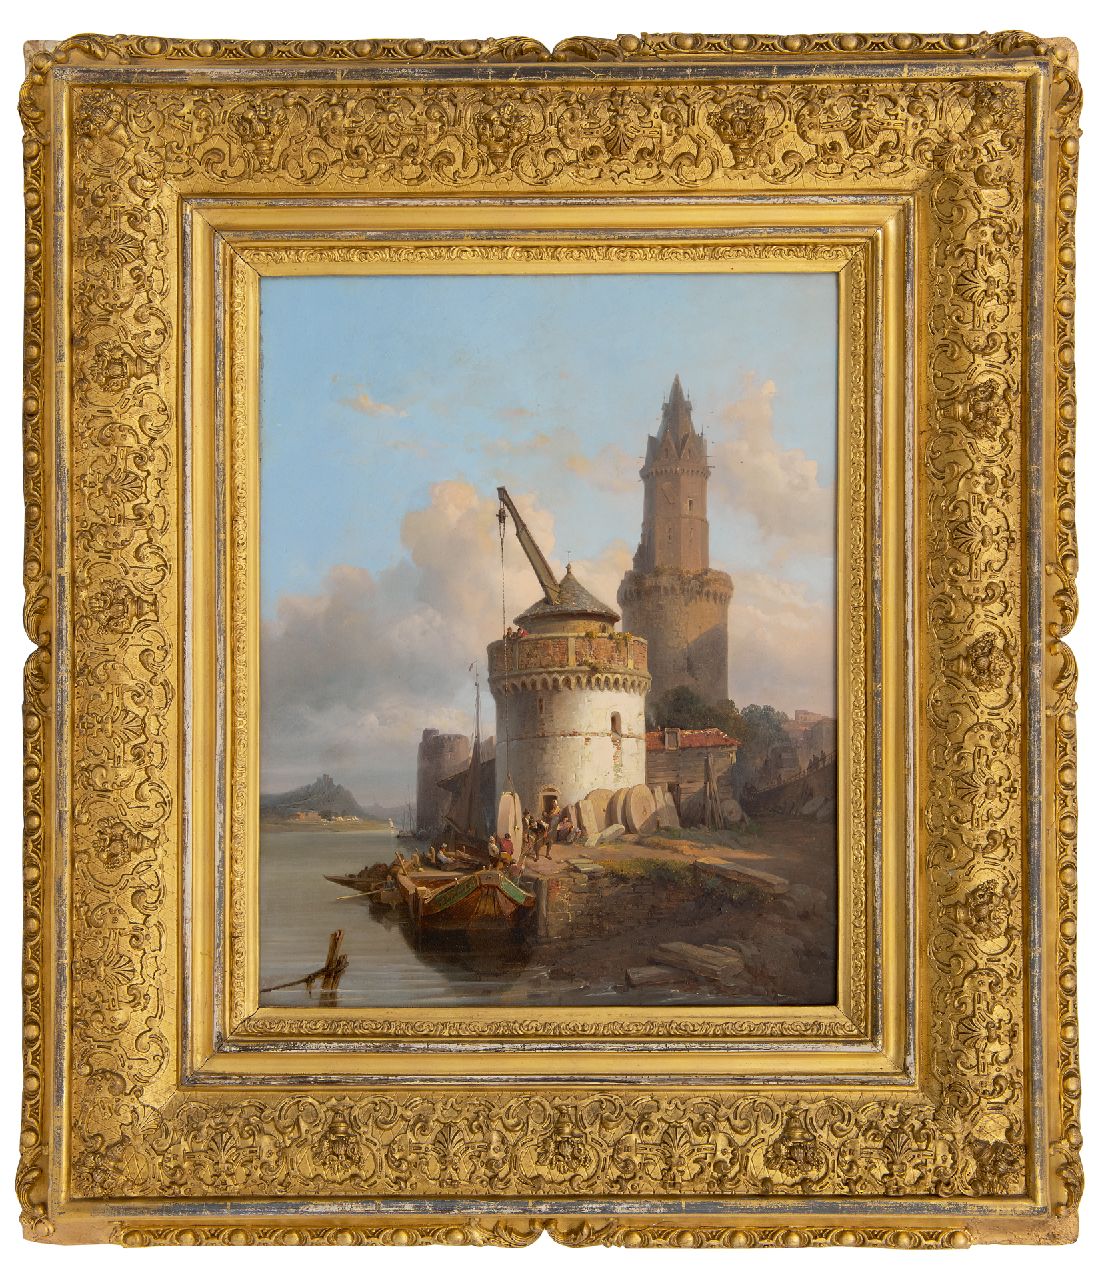 Bossuet F.A.  | François Antoine Bossuet, Het laden van molenstenen in Andernach aan de Rijn, olieverf op paneel 39,5 x 31,0 cm, gesigneerd op de boeg van het schip